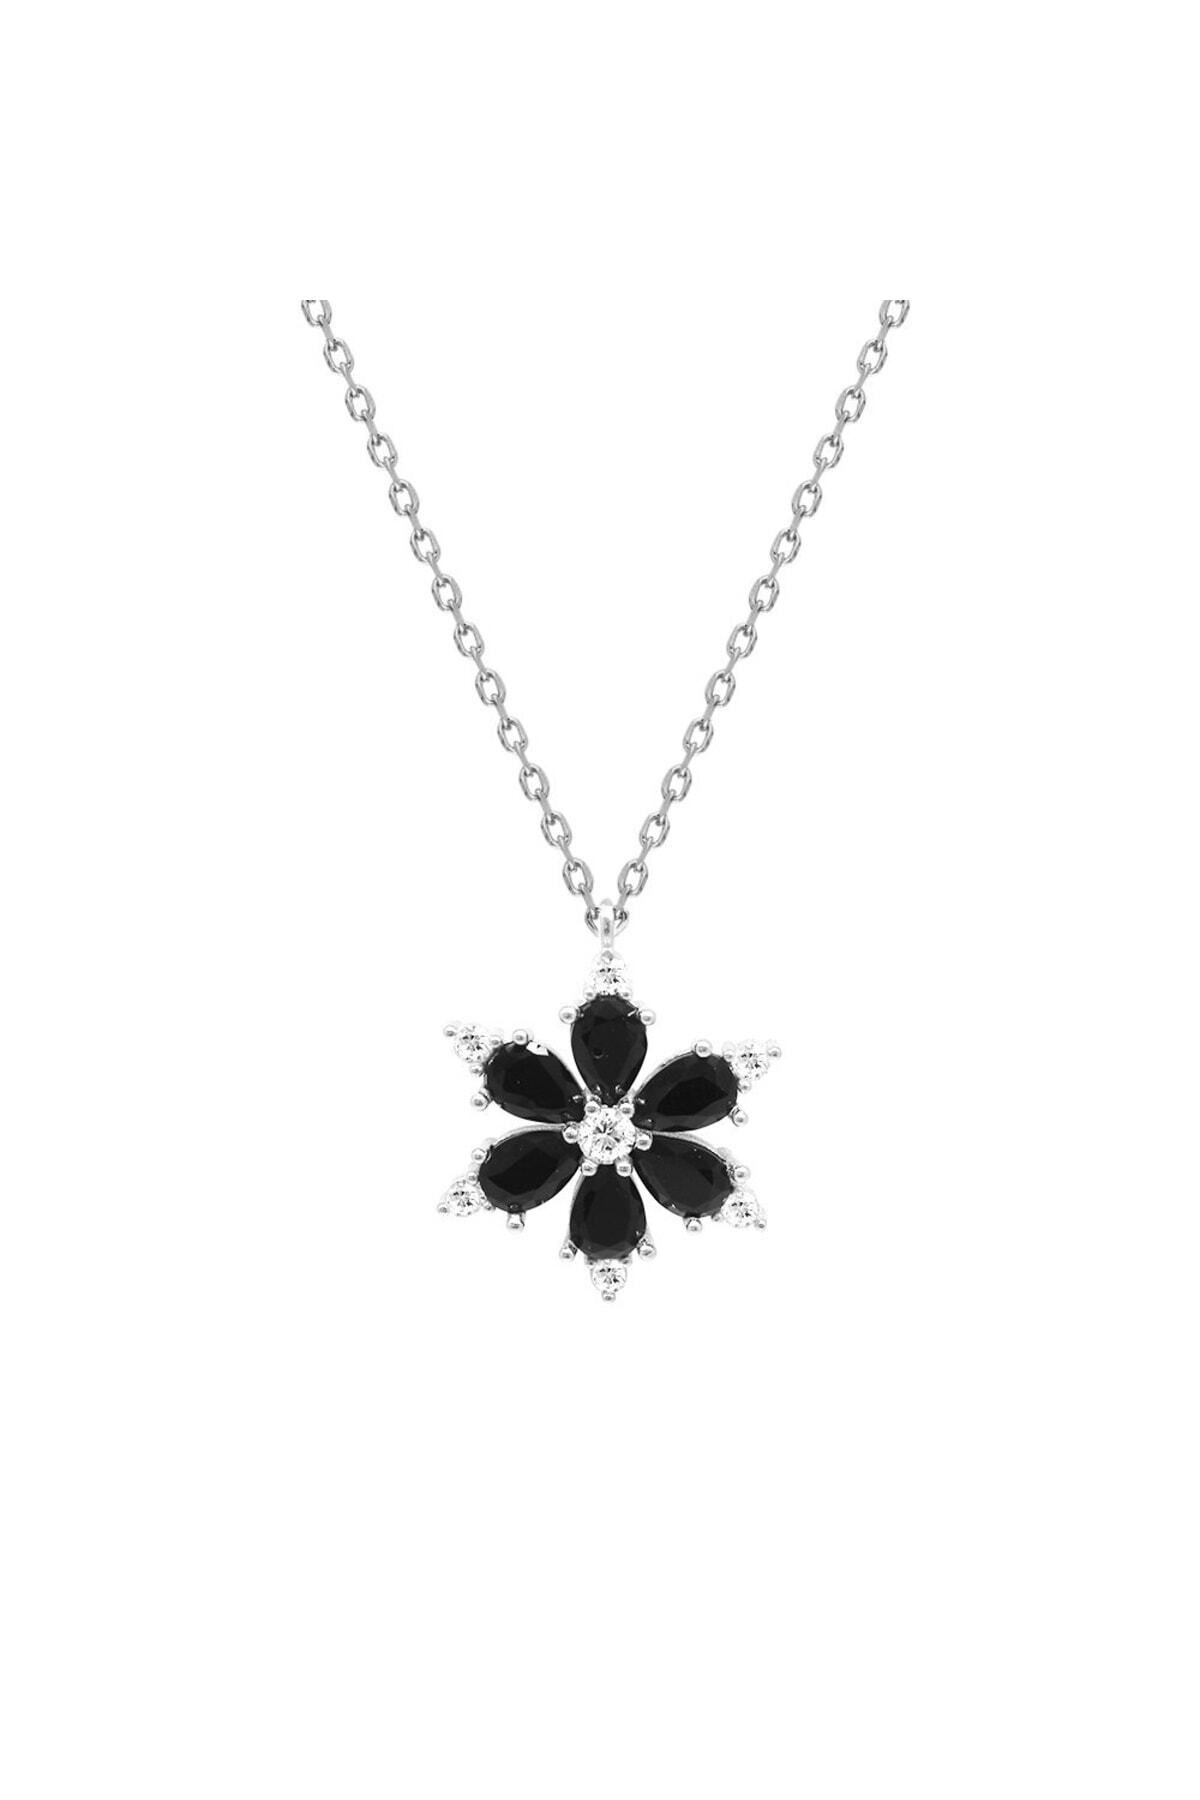 Tesbihane Siyah Zirkon Taşlı Kır Çiçeği Tasarım 925 Ayar Gümüş Kadın Kolye